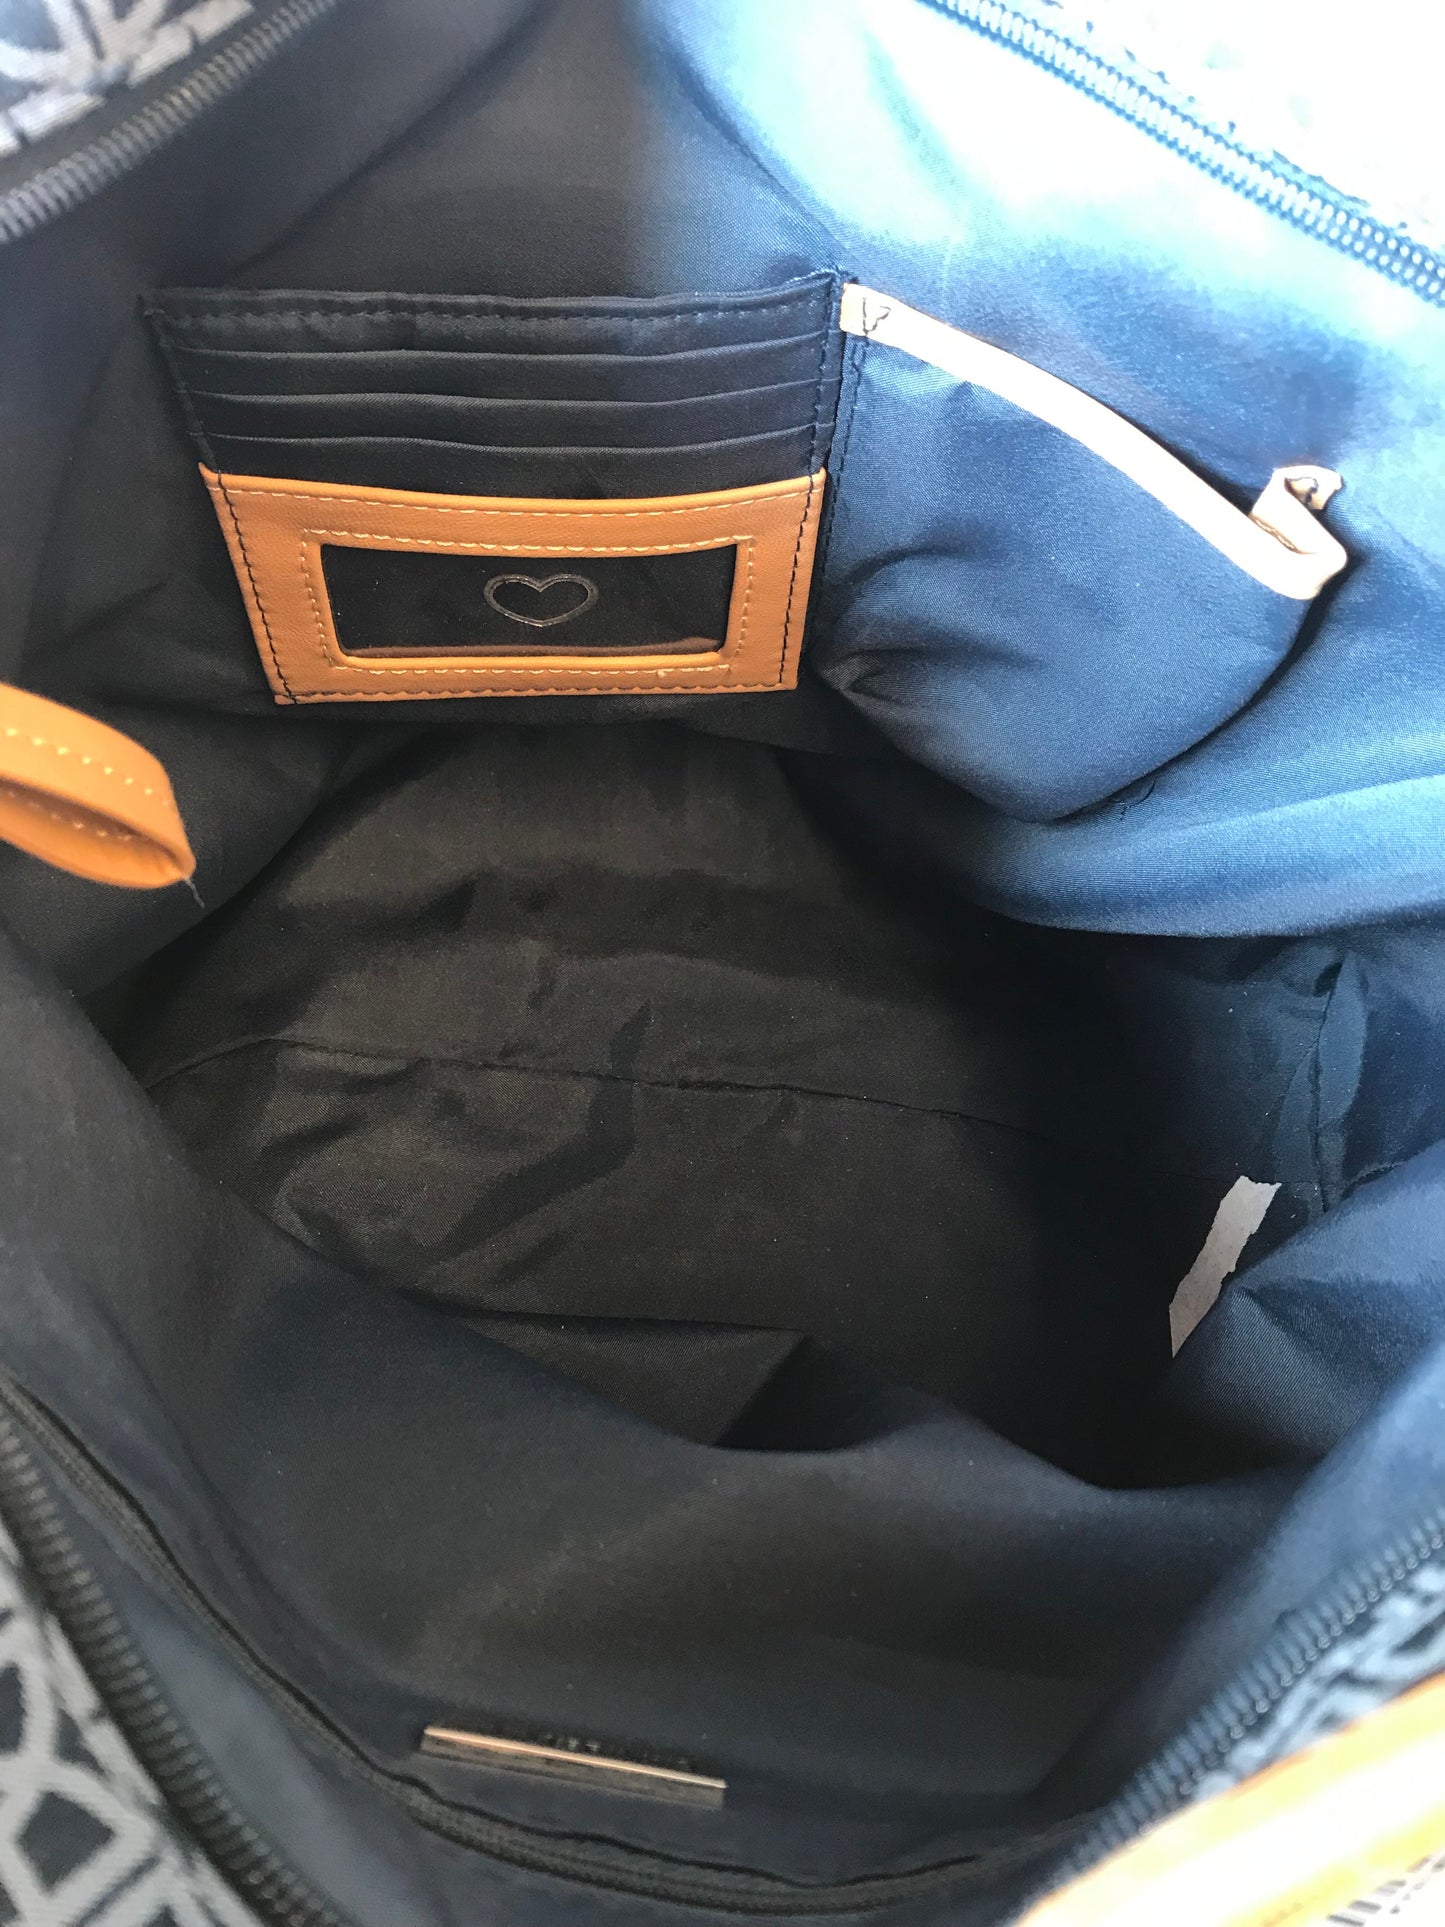 Handbag By Giani Bernini, Size: Large